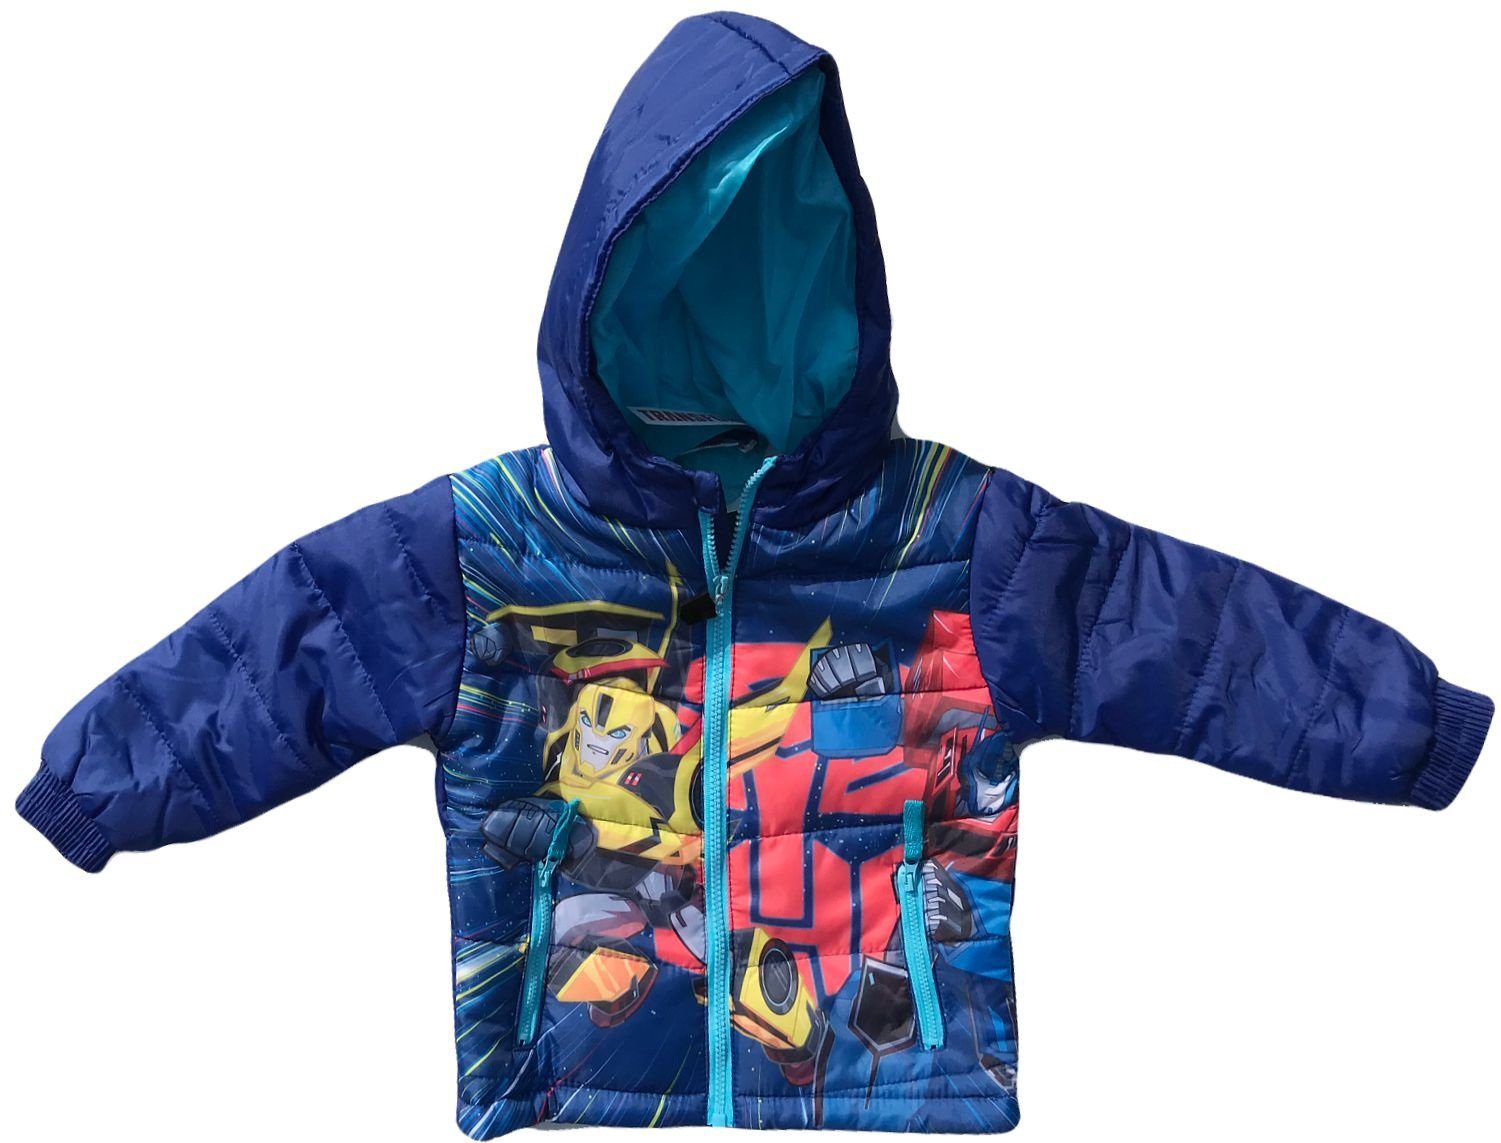 Transformers Winterjacke TRANSFORMERS Kinderjacke Jacke für Jungen in blau oder grau für Kinder 3 4 6 8 Jahre